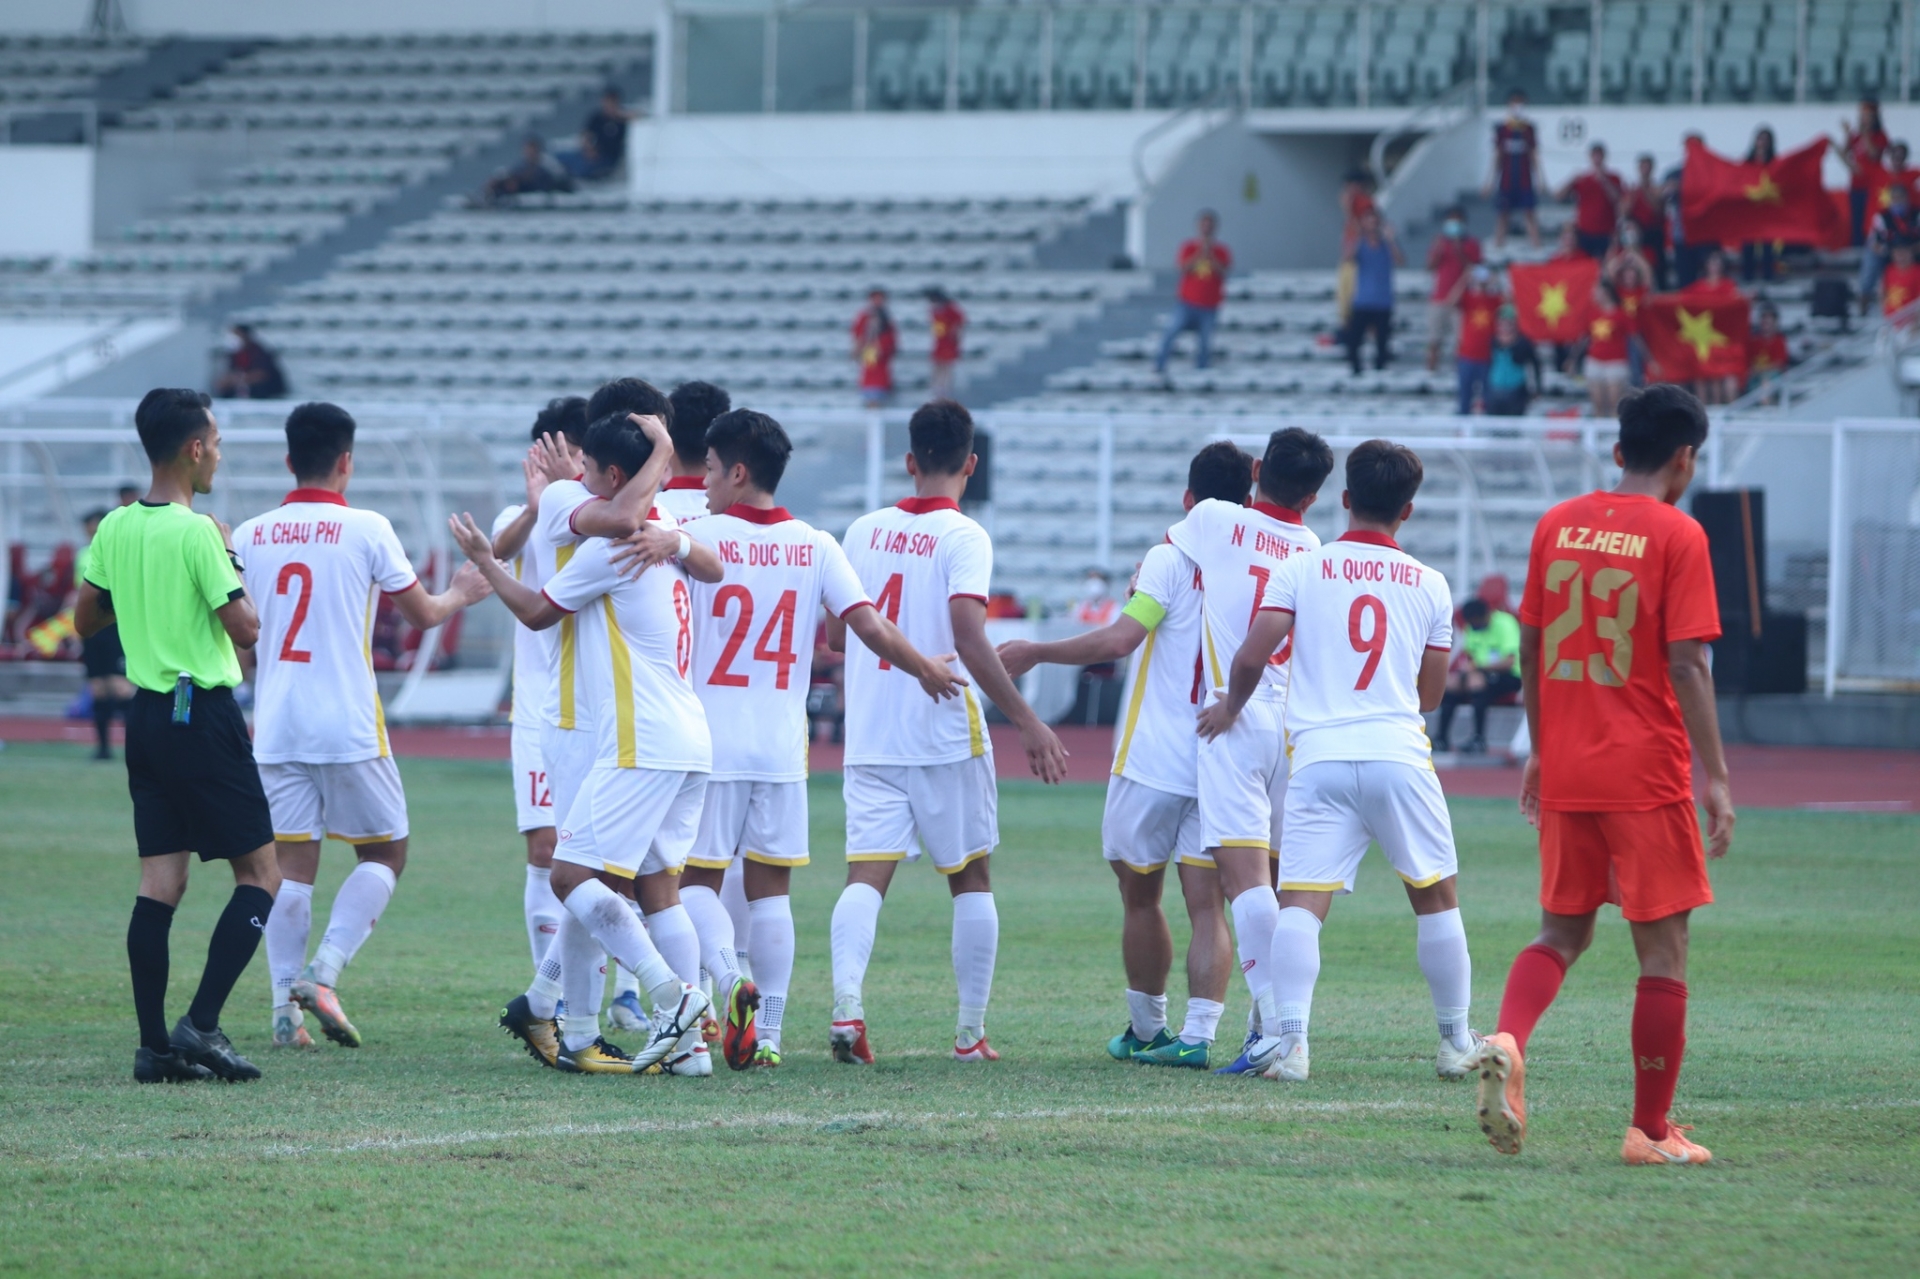 Thi đấu đầy ấn tượng, 'sao trẻ' U19 Việt Nam sắp nhận được 'đặc quyền' lớn